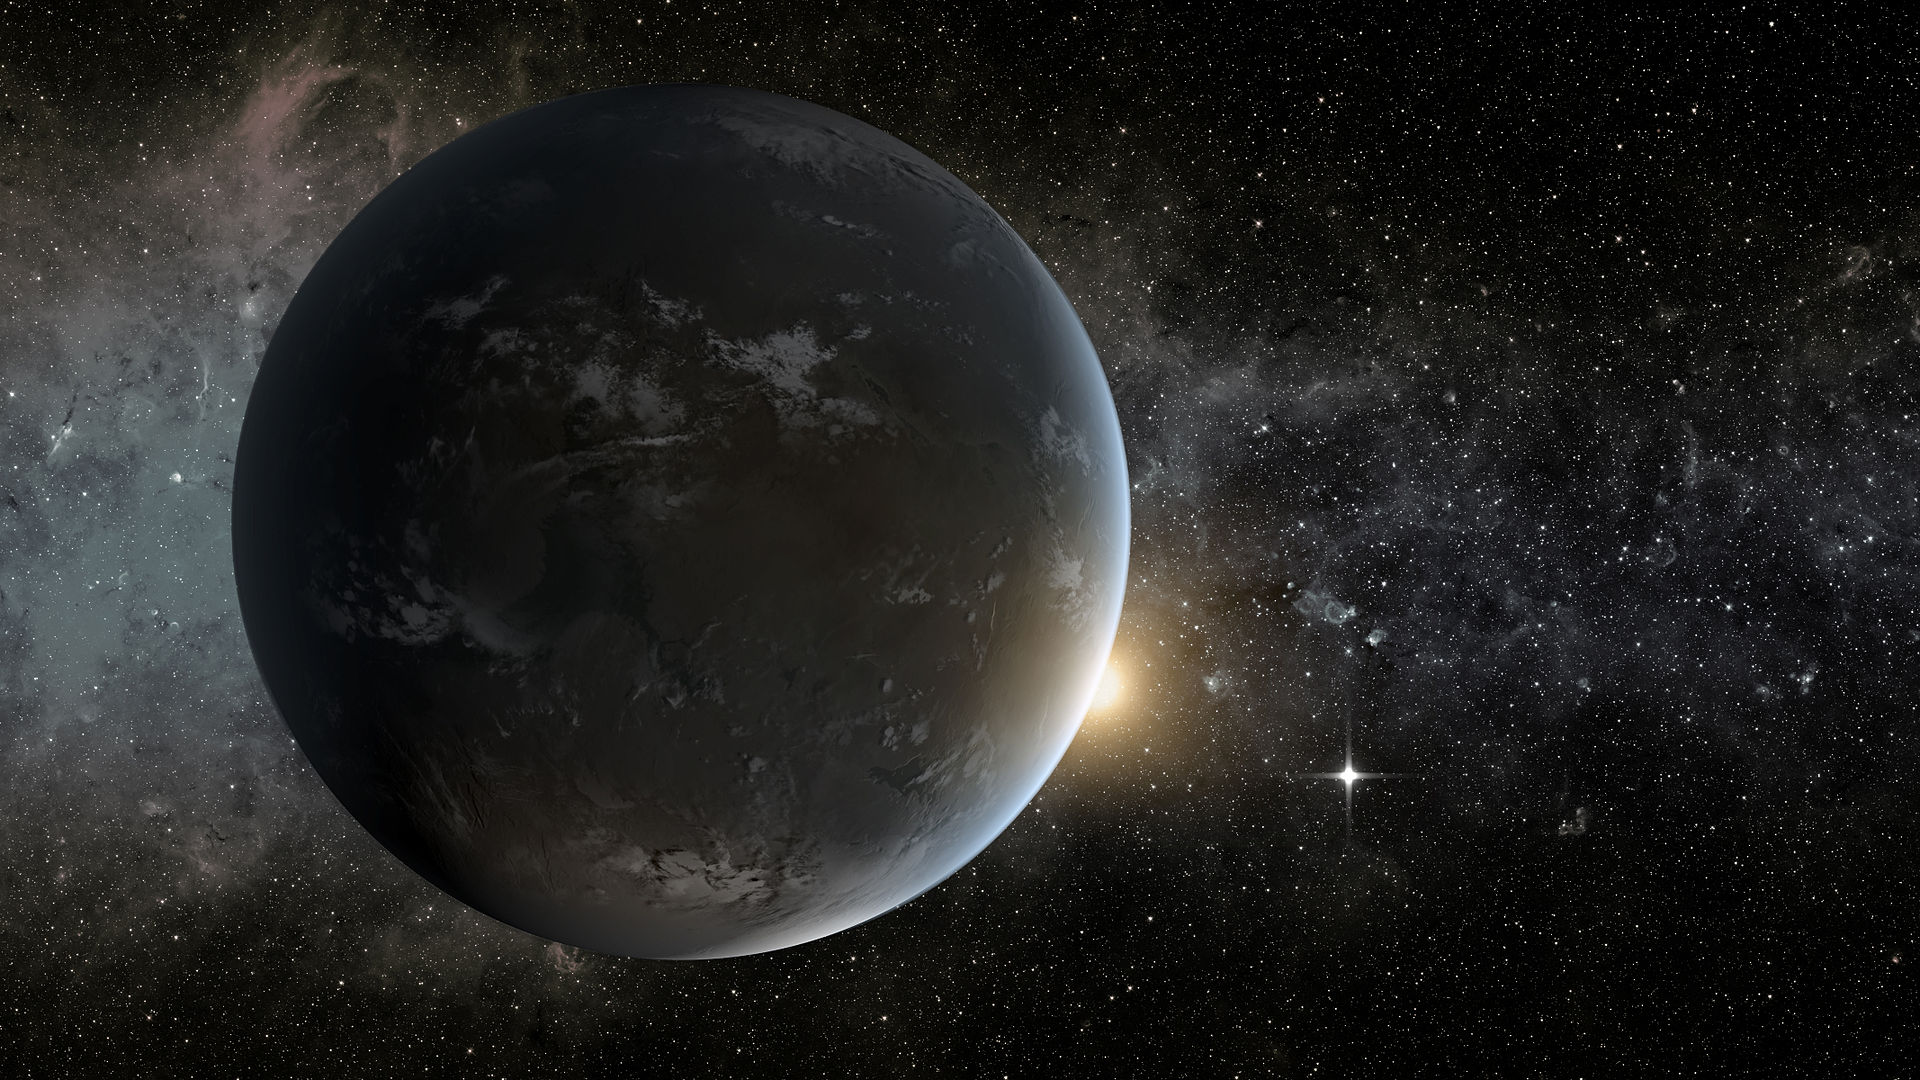 Телескоп НАСА нашел планету из Интерстеллар: она вся покрыта водой и время замедлено Кеплер, Ученые, планете, параметрам, самом, только, может, предполагают, Kepler62, медленнее, время, значит, планету, Краузе, узнать, Кеплере, понимании, нашем, считаем, сможет